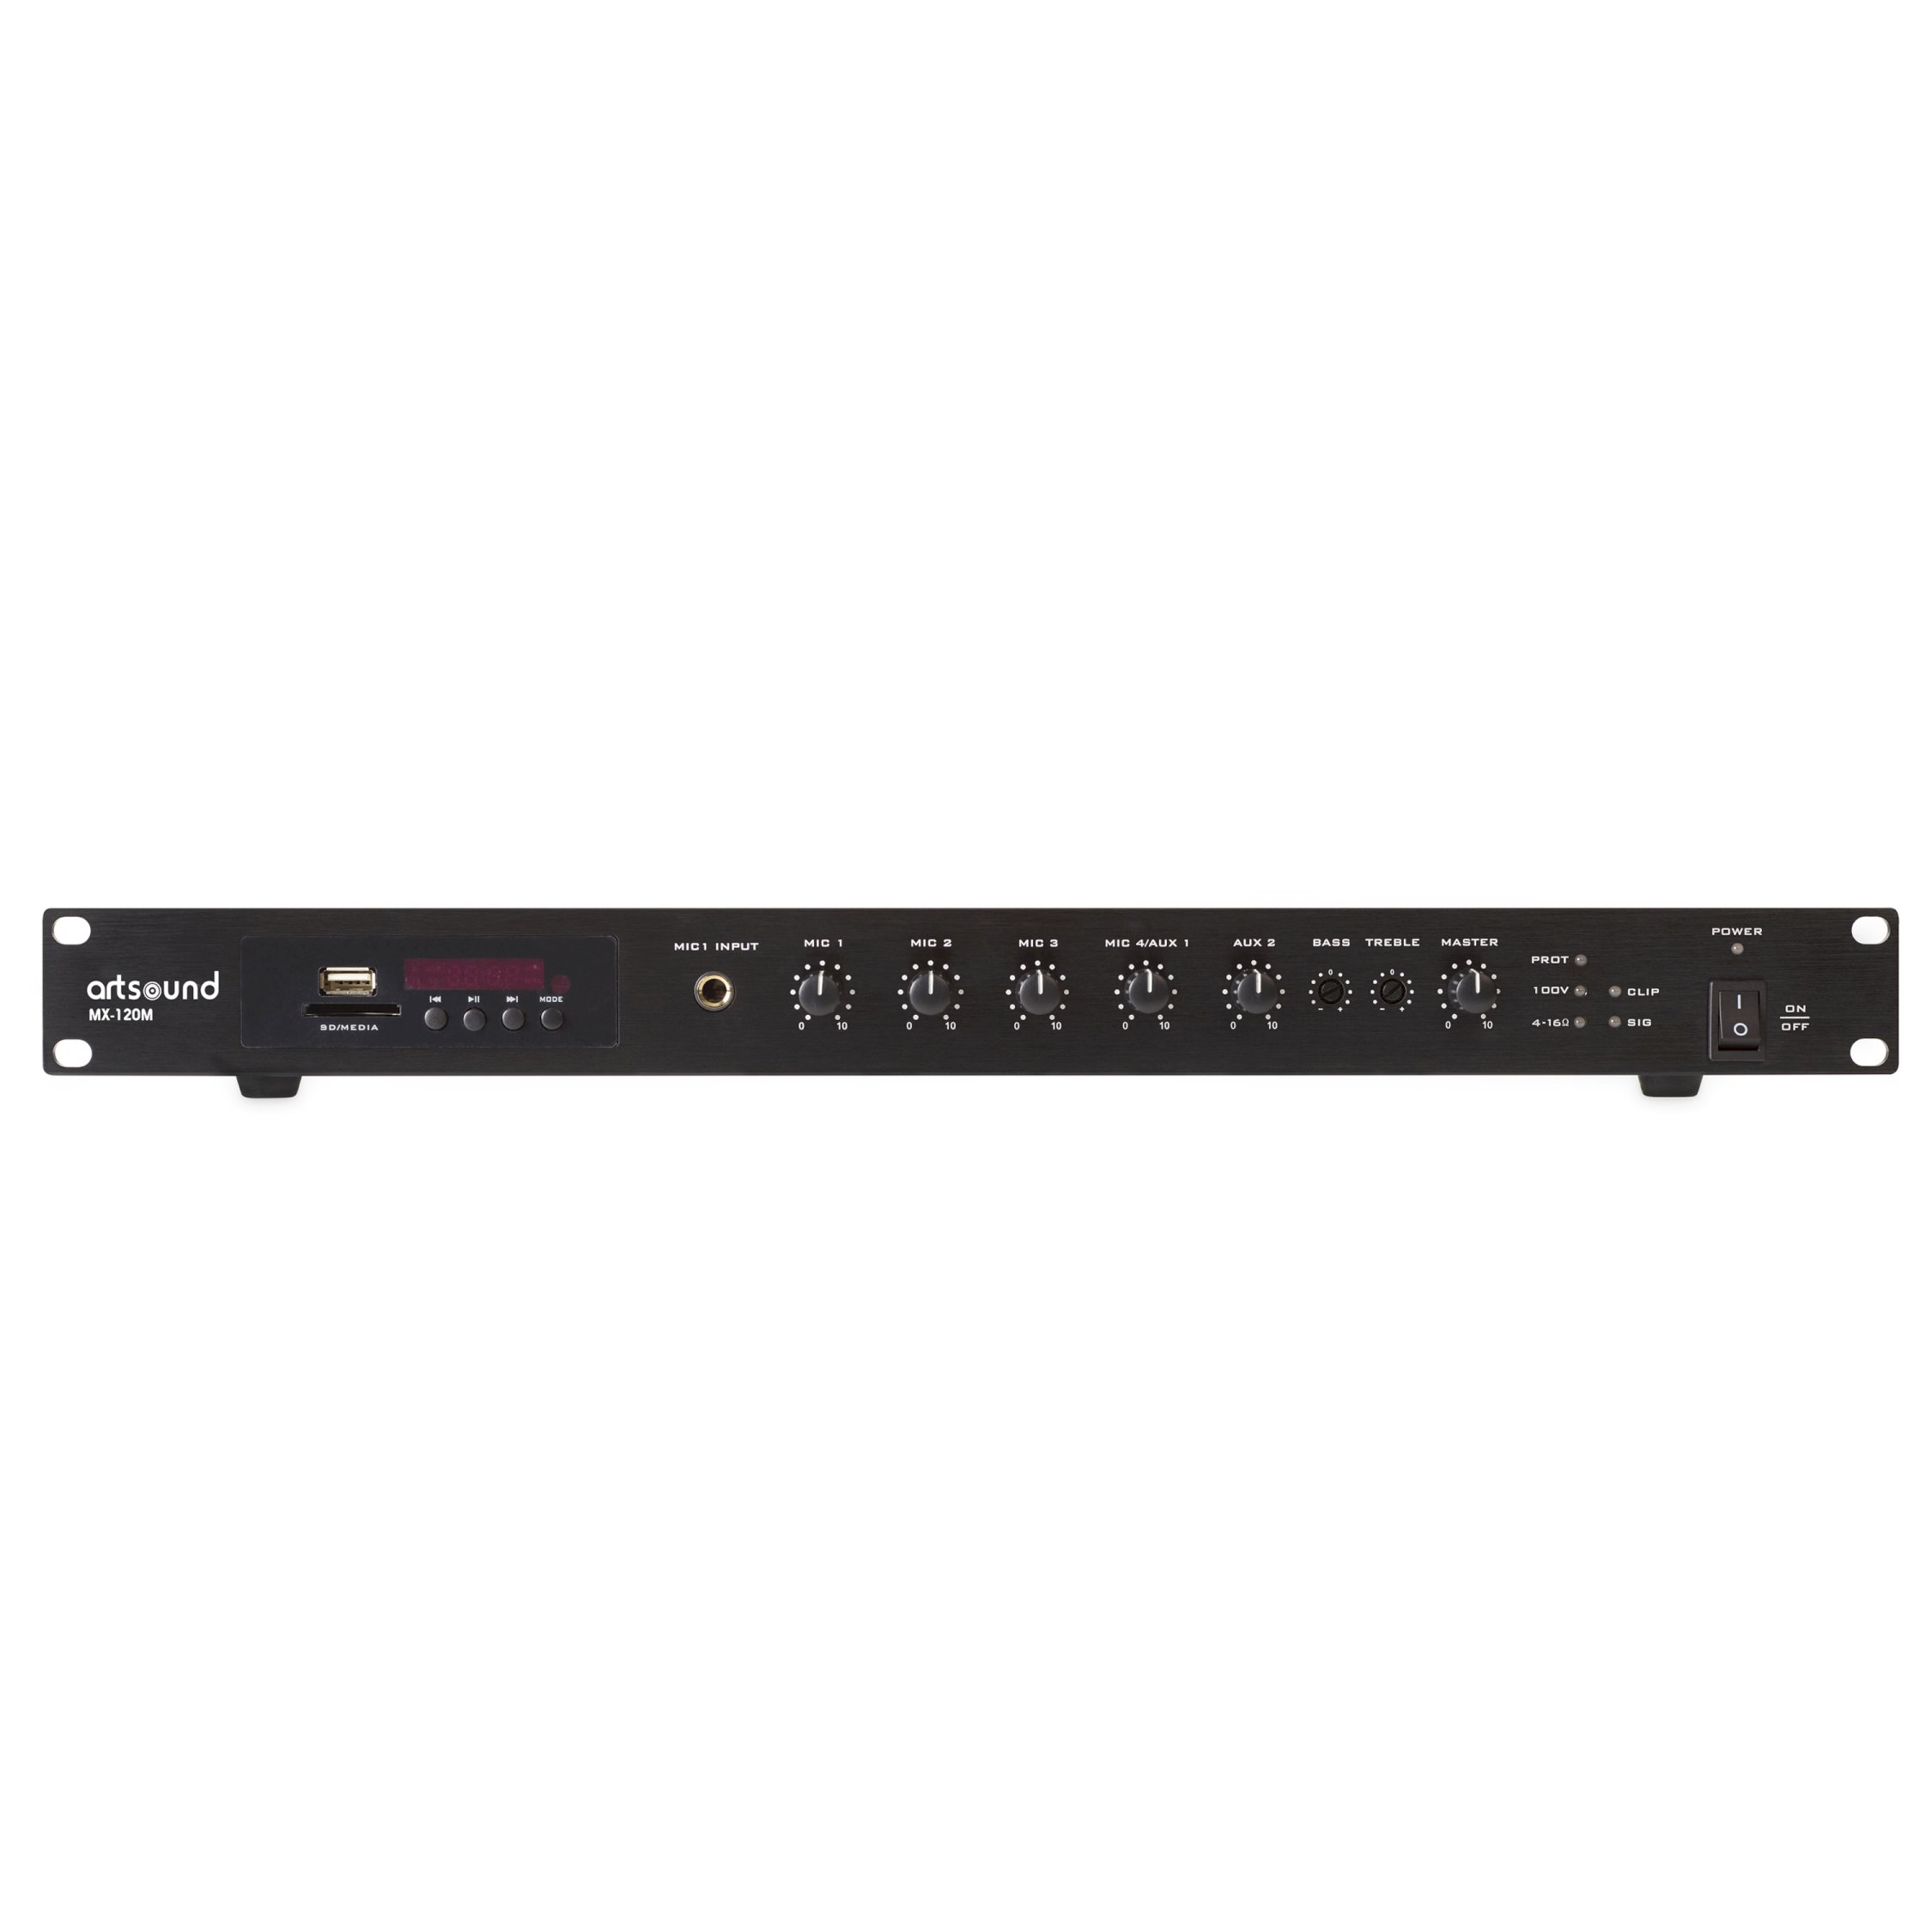 MX-120M, mixer amplifier integrated source, 19" 1U, 100V, 120W